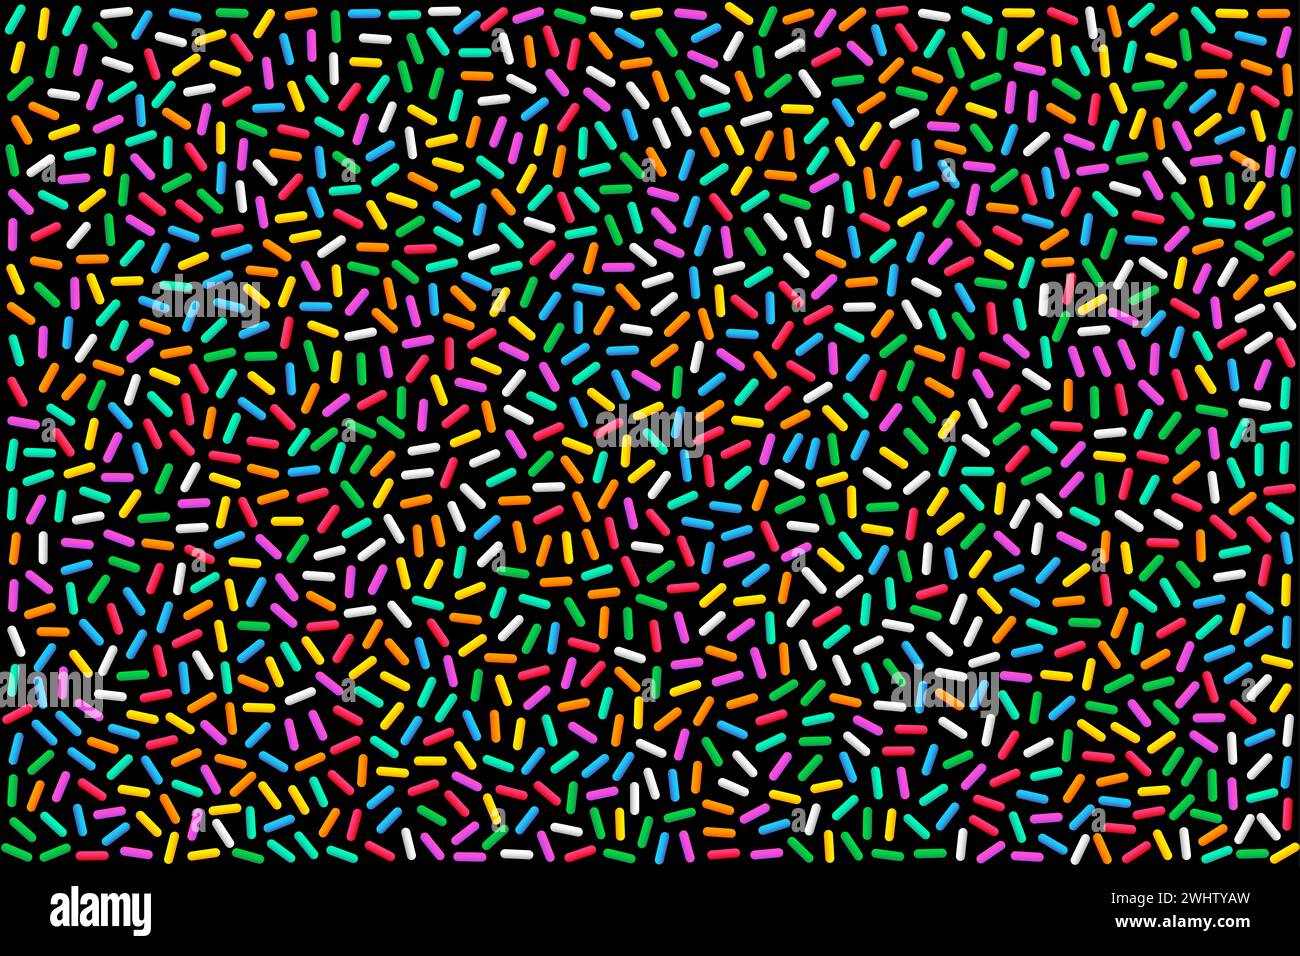 Saupoudrons d'arc-en-ciel colorées, illustration sur fond noir. Saupoudrées de sucre en forme de tige multicolore, petits bonbons dans une variété de couleurs différentes. Banque D'Images